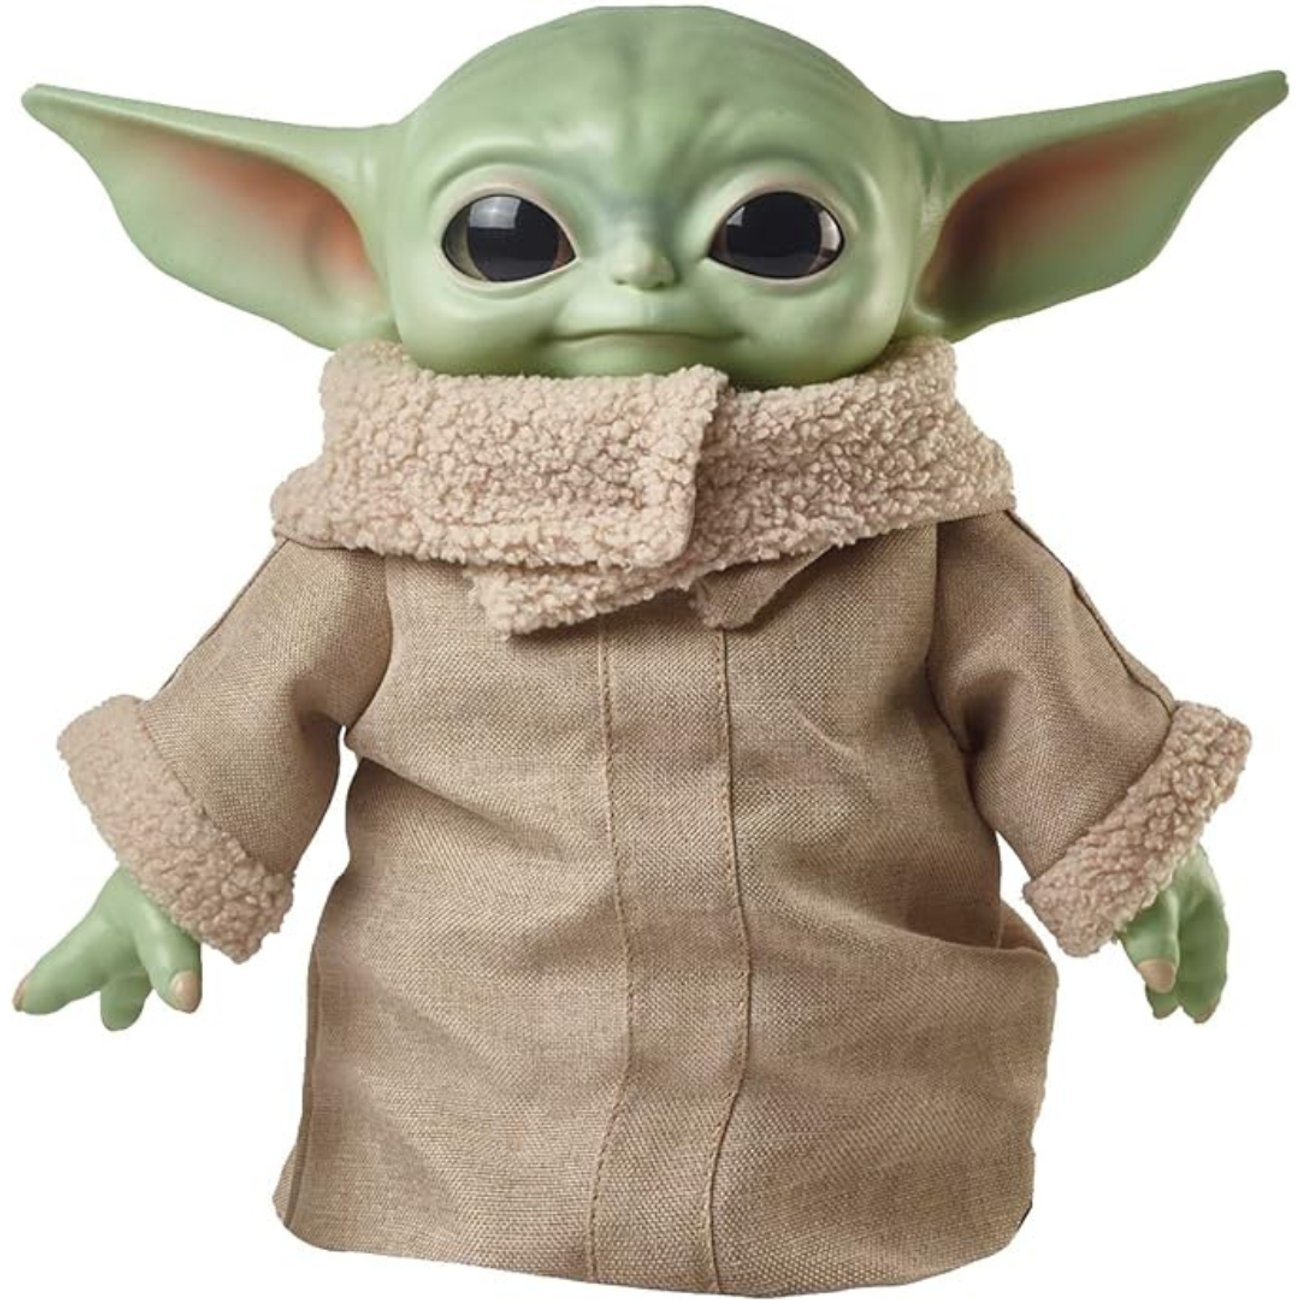 Baby Yoda Plüschfigur